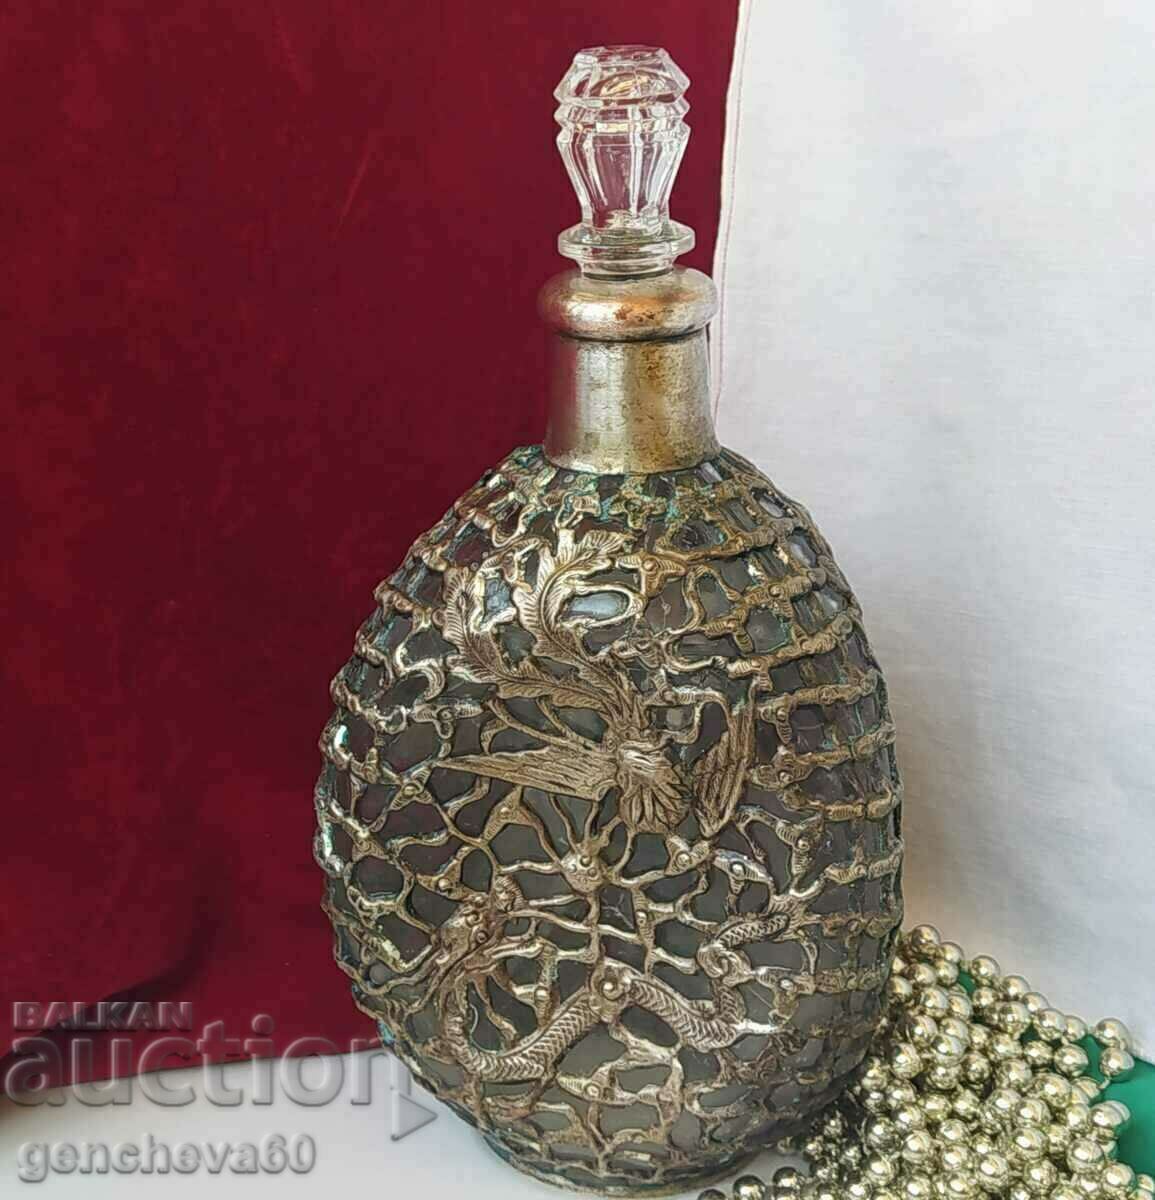 Decantor, decantor cu ornamente din argint împletit, de colecție